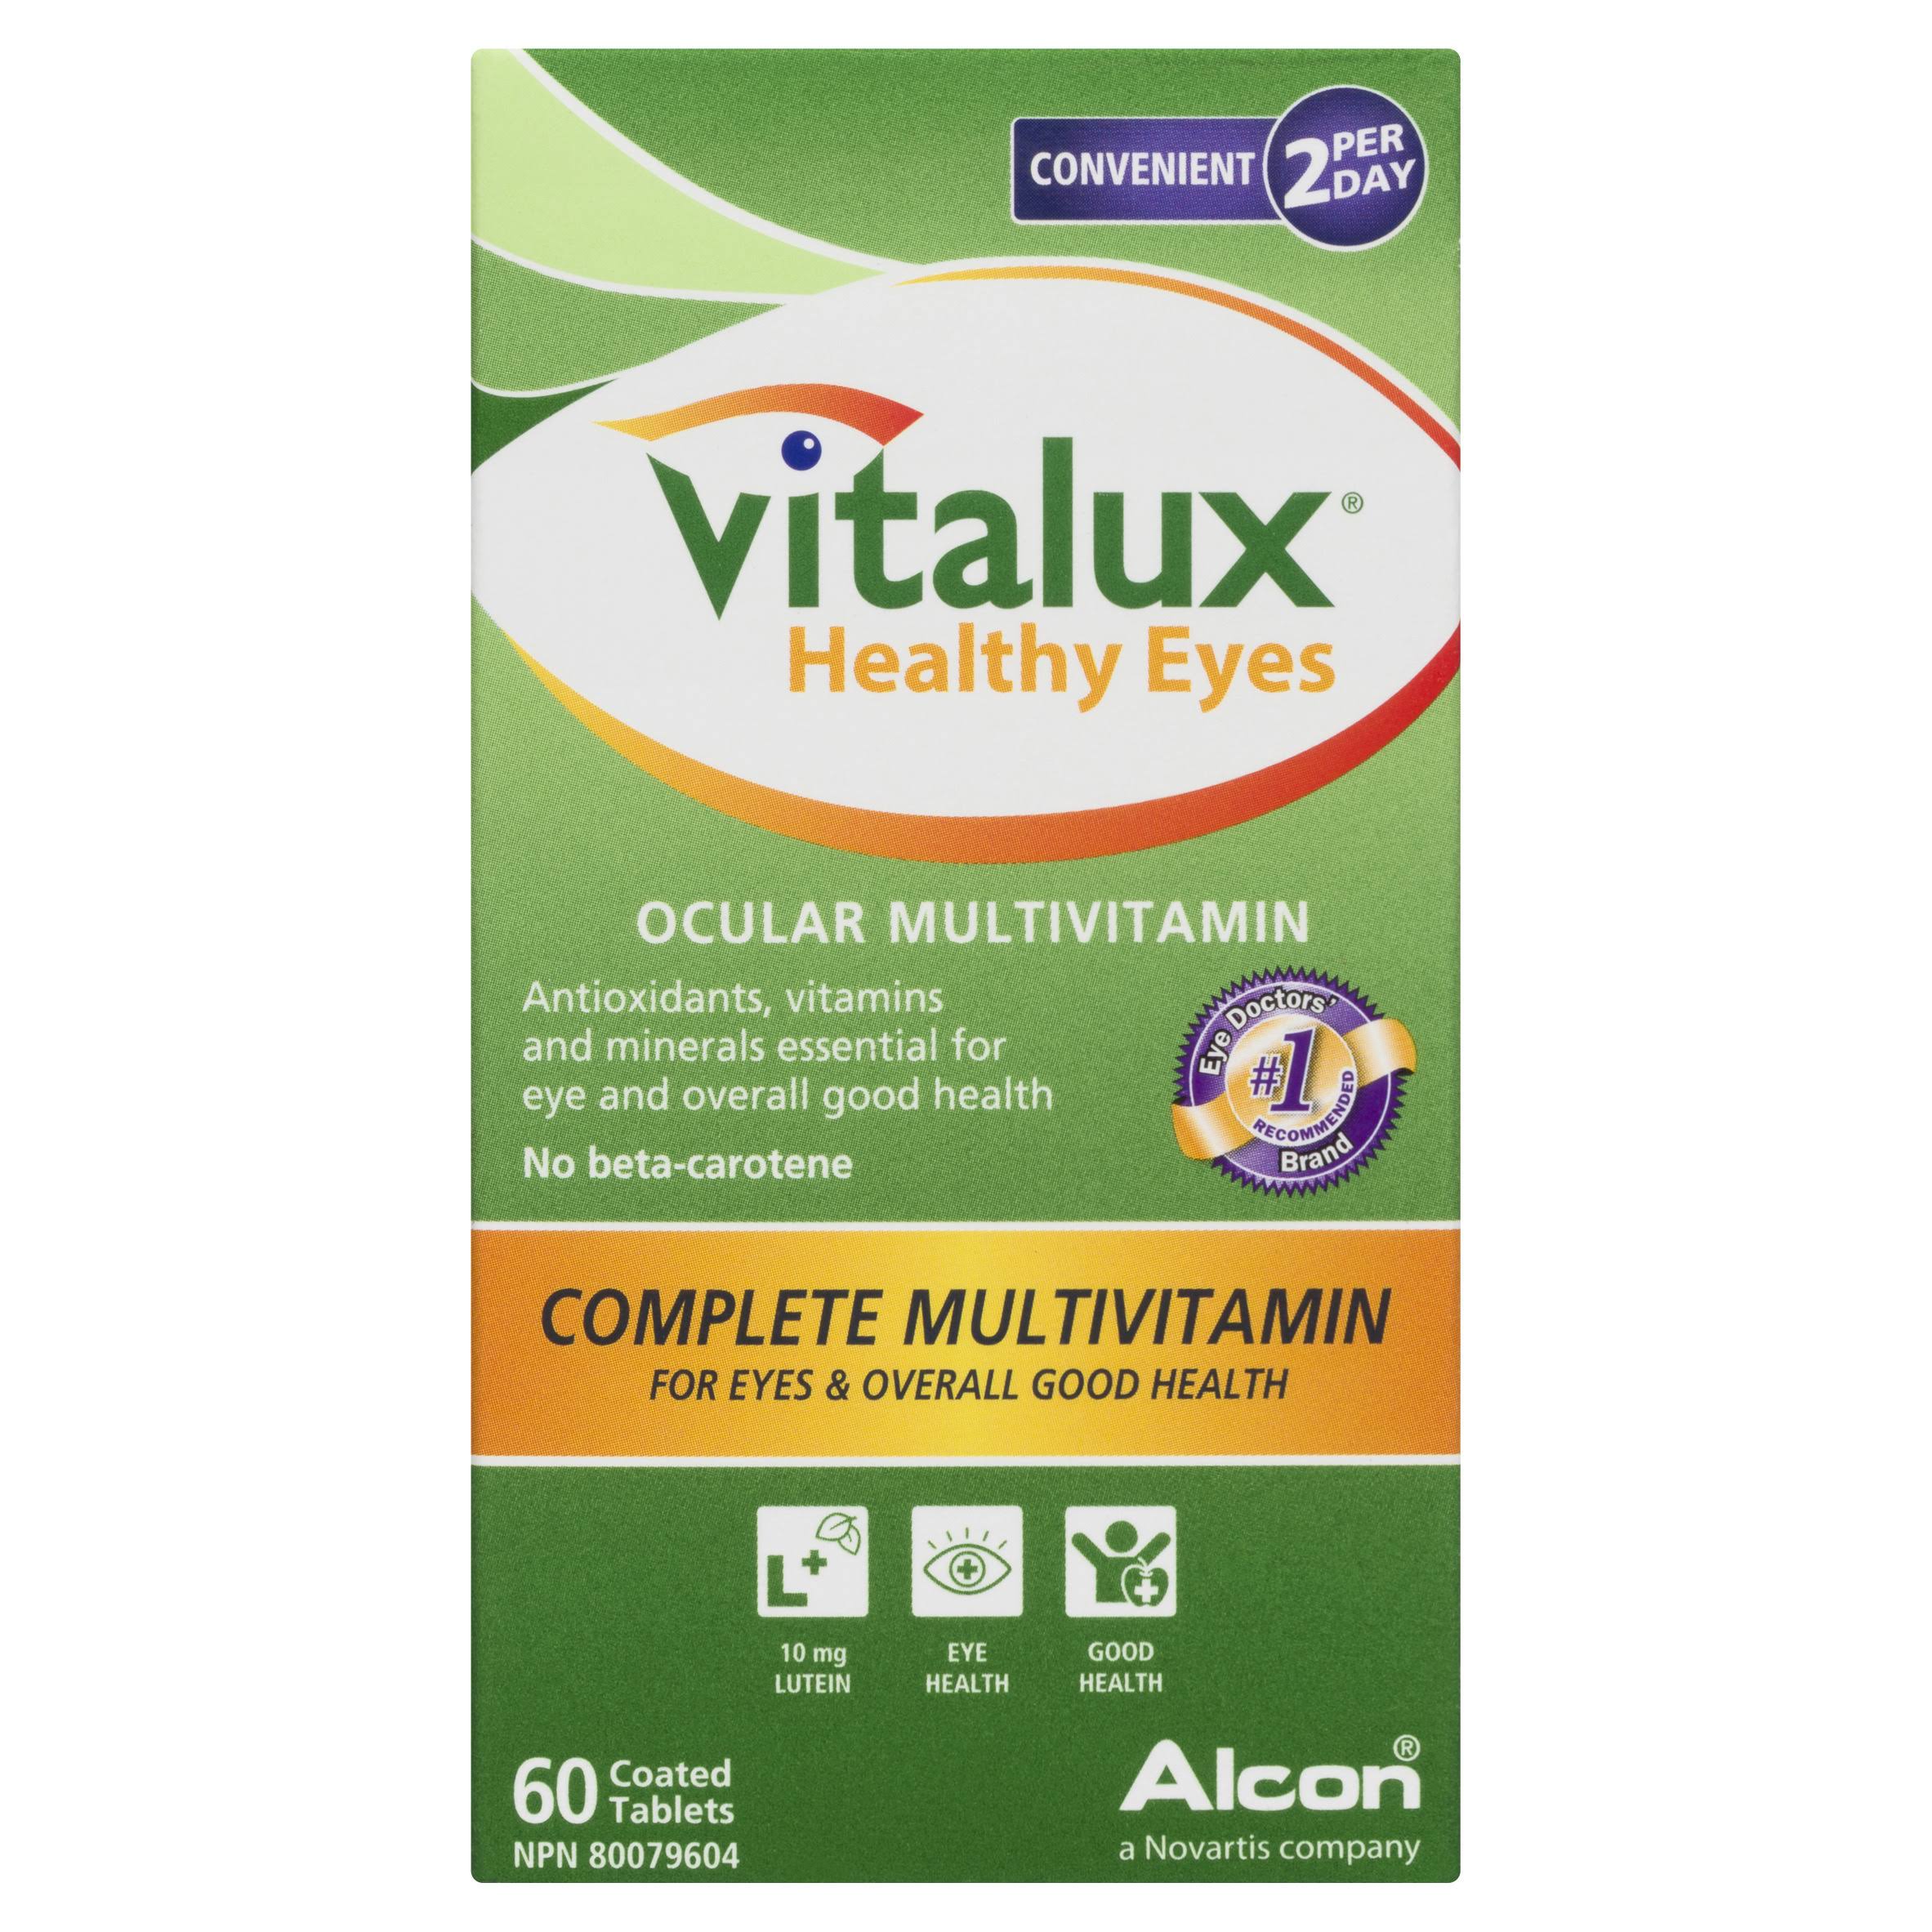 Vitalux Healthy Eyes 60's